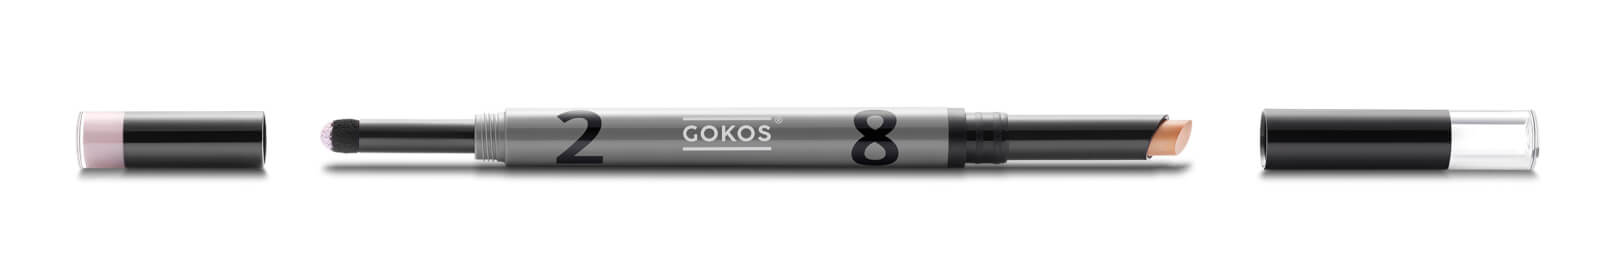 GOKOS - Beauty to go - Indie-Makeup-Brand mit Stiften 23